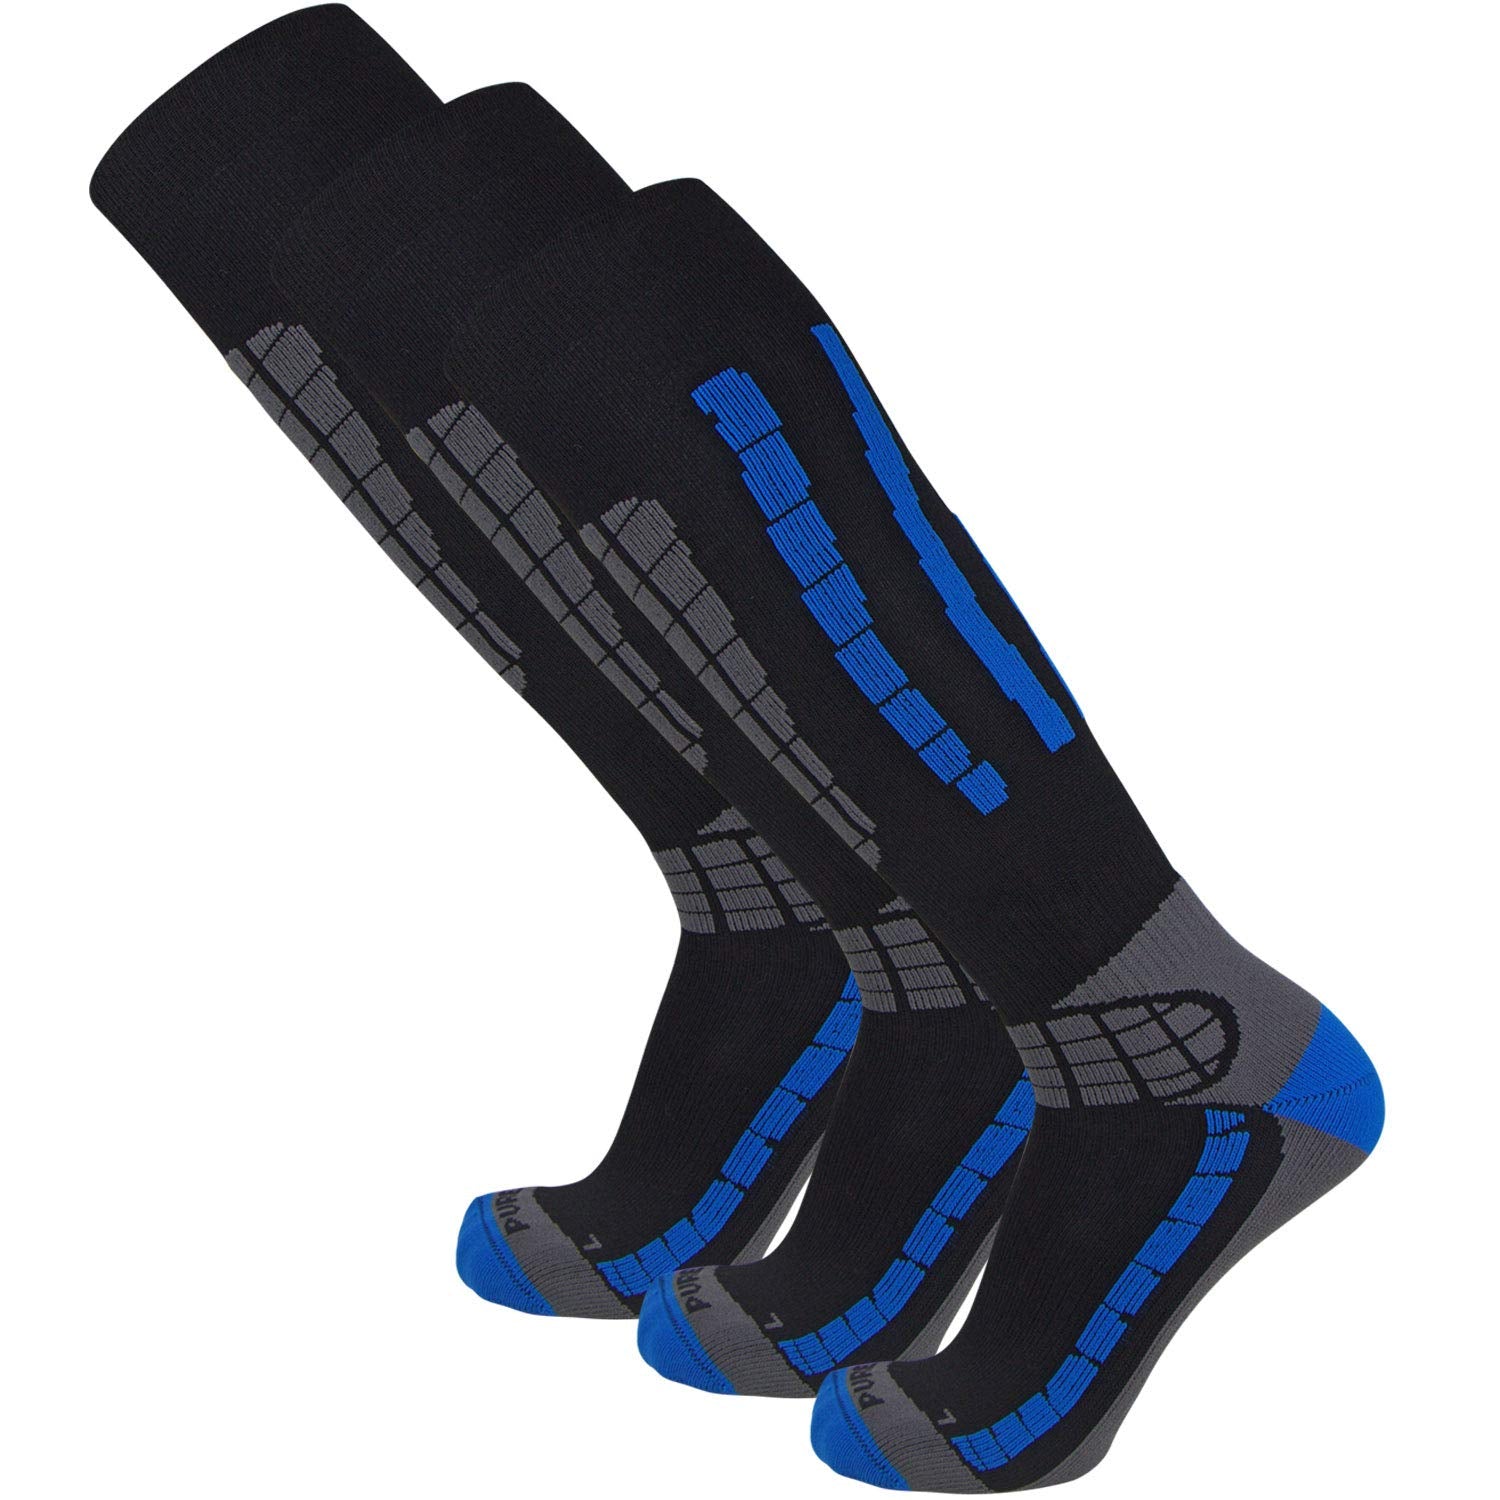 Pure Athlete Ski Socks - Best Lightweight Warm Skiing Socks